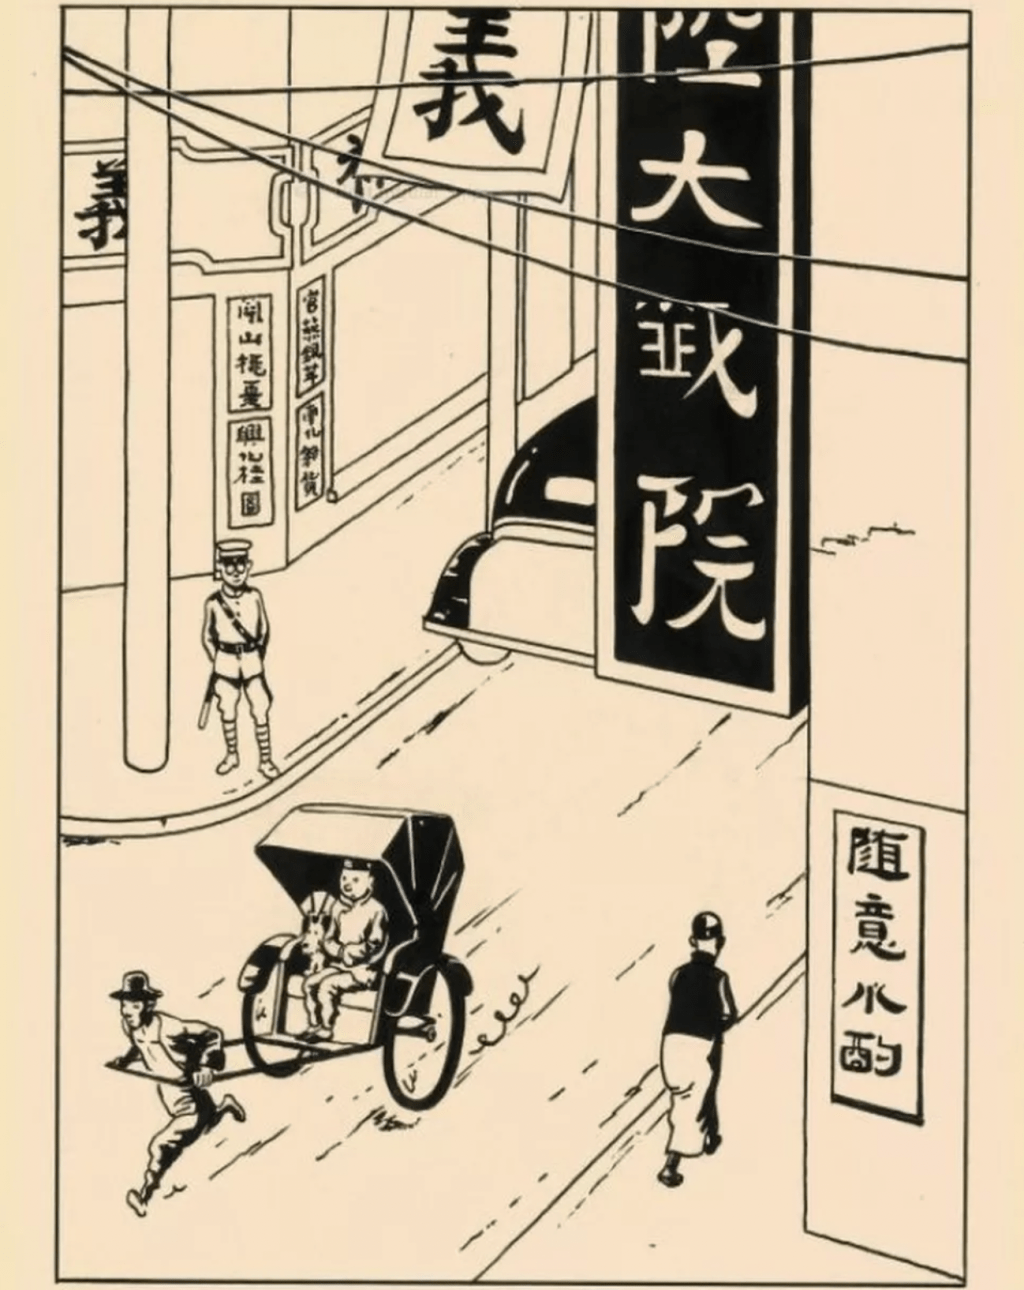 《丁丁歷險記》「藍蓮花」故事中其中一頁以上海為背景的原創插圖，2015年在香港的拍賣會上以 960 萬港元的價格售出。